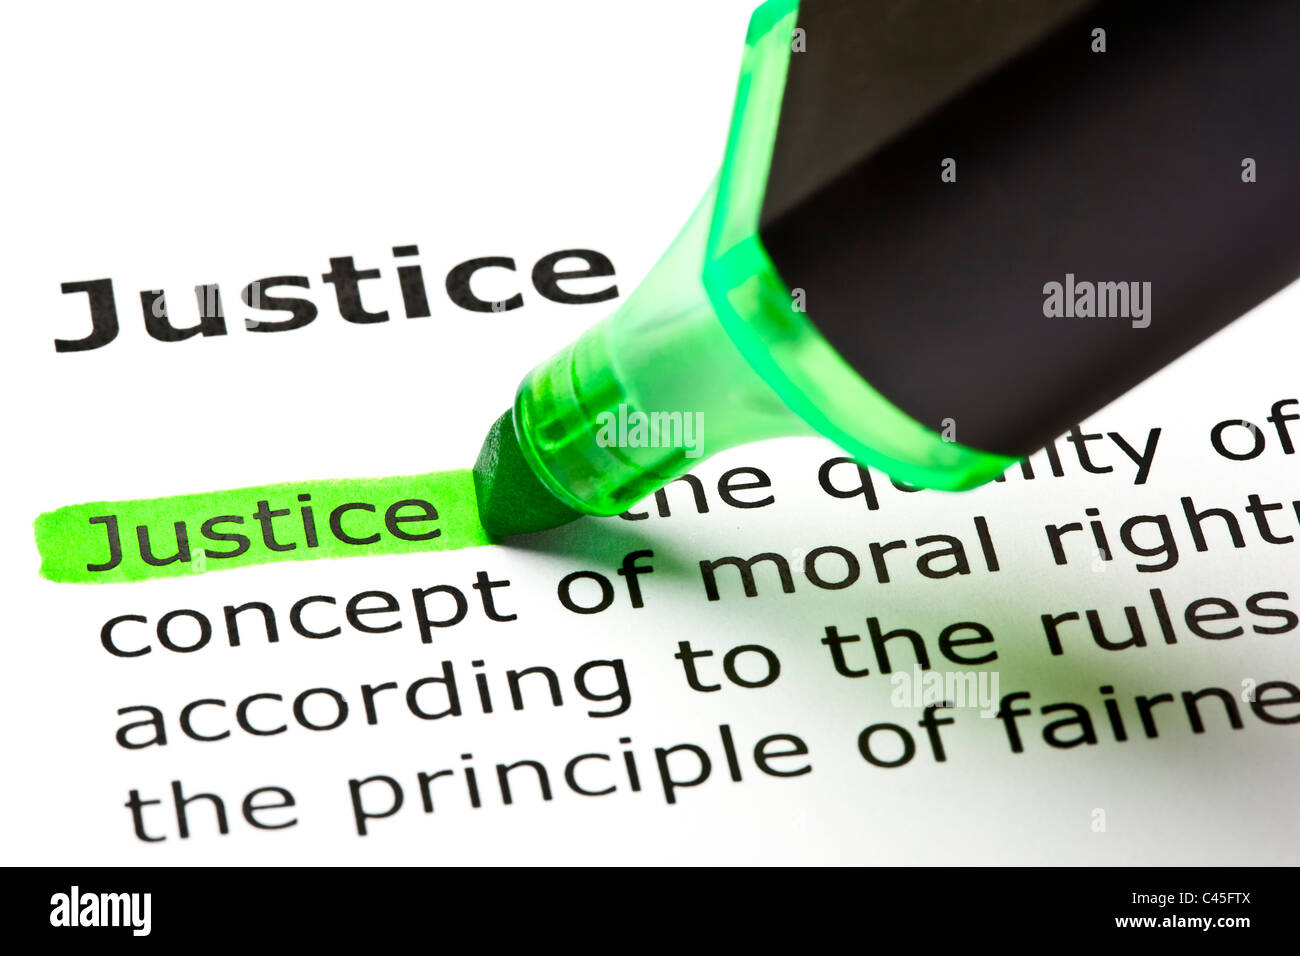 Le mot "Justice" en surbrillance verte avec feutre Banque D'Images